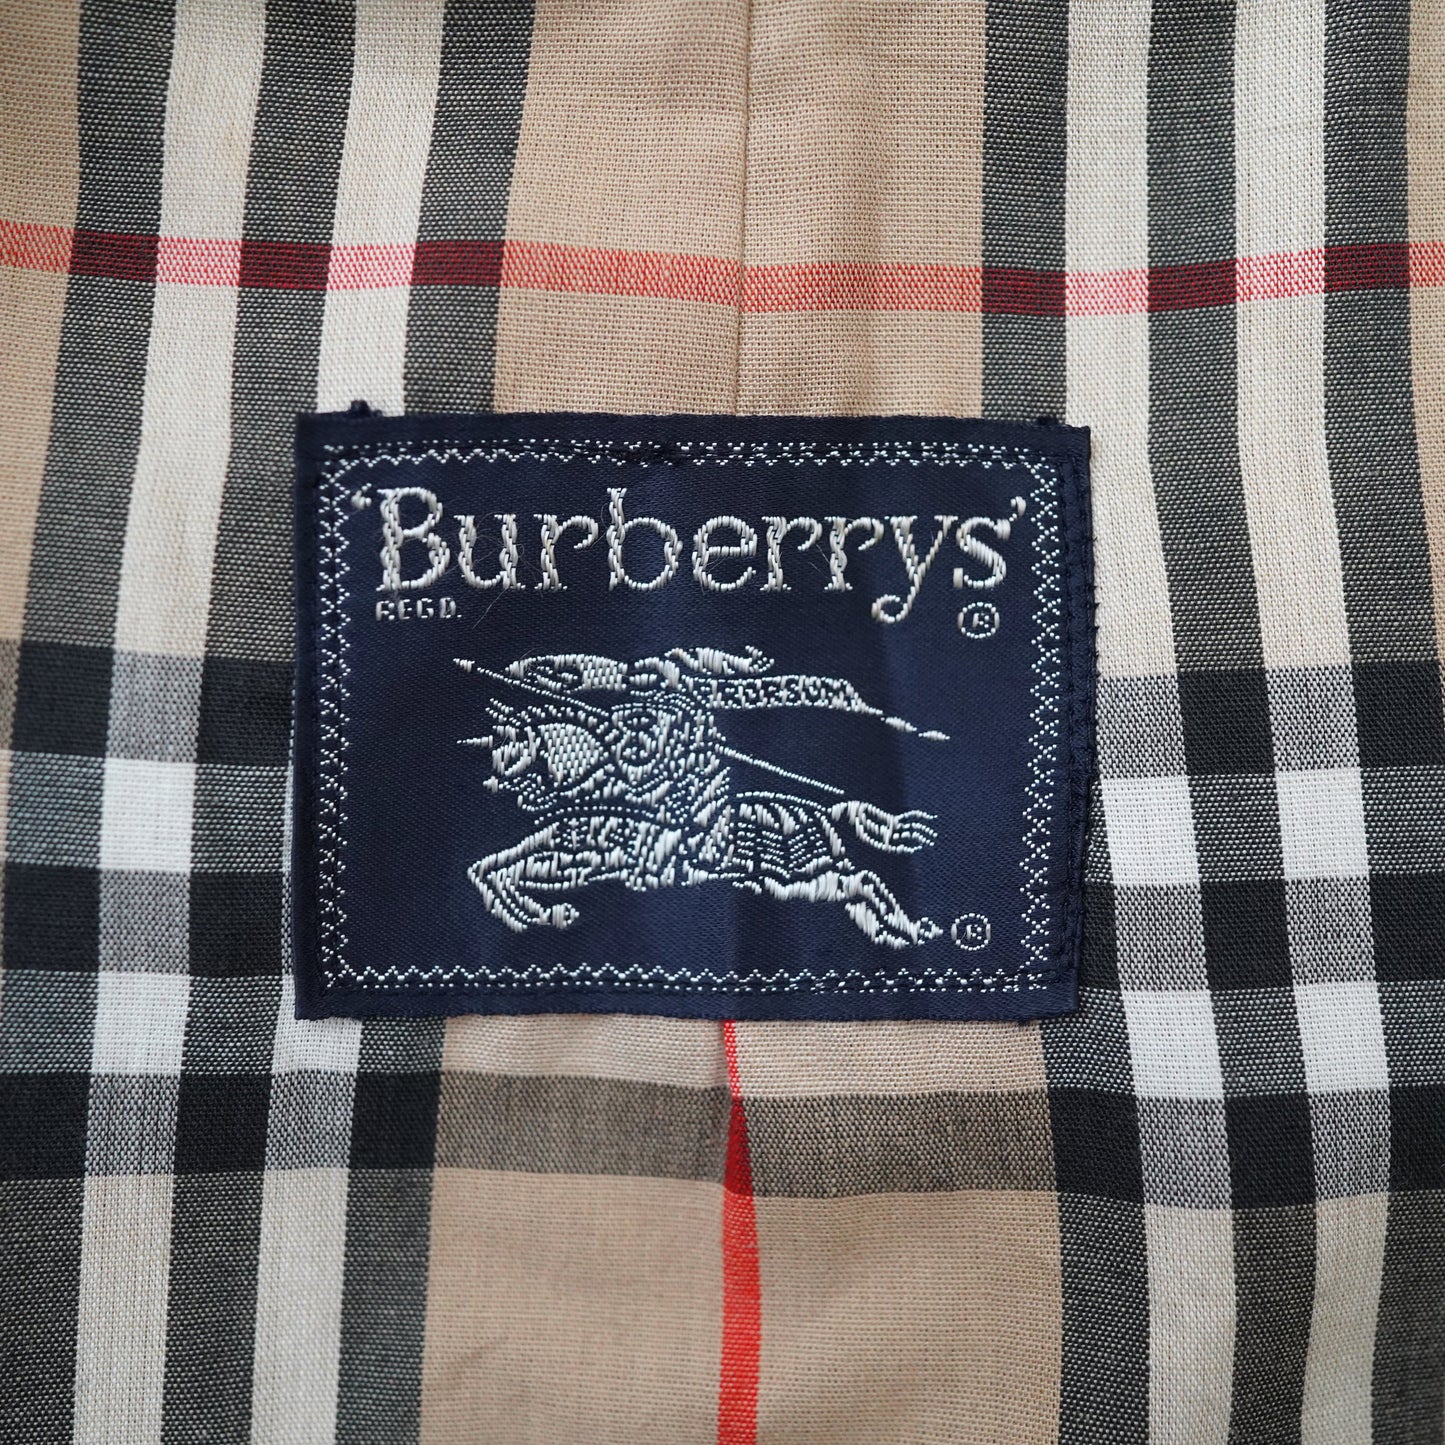 90s Burberrys coat